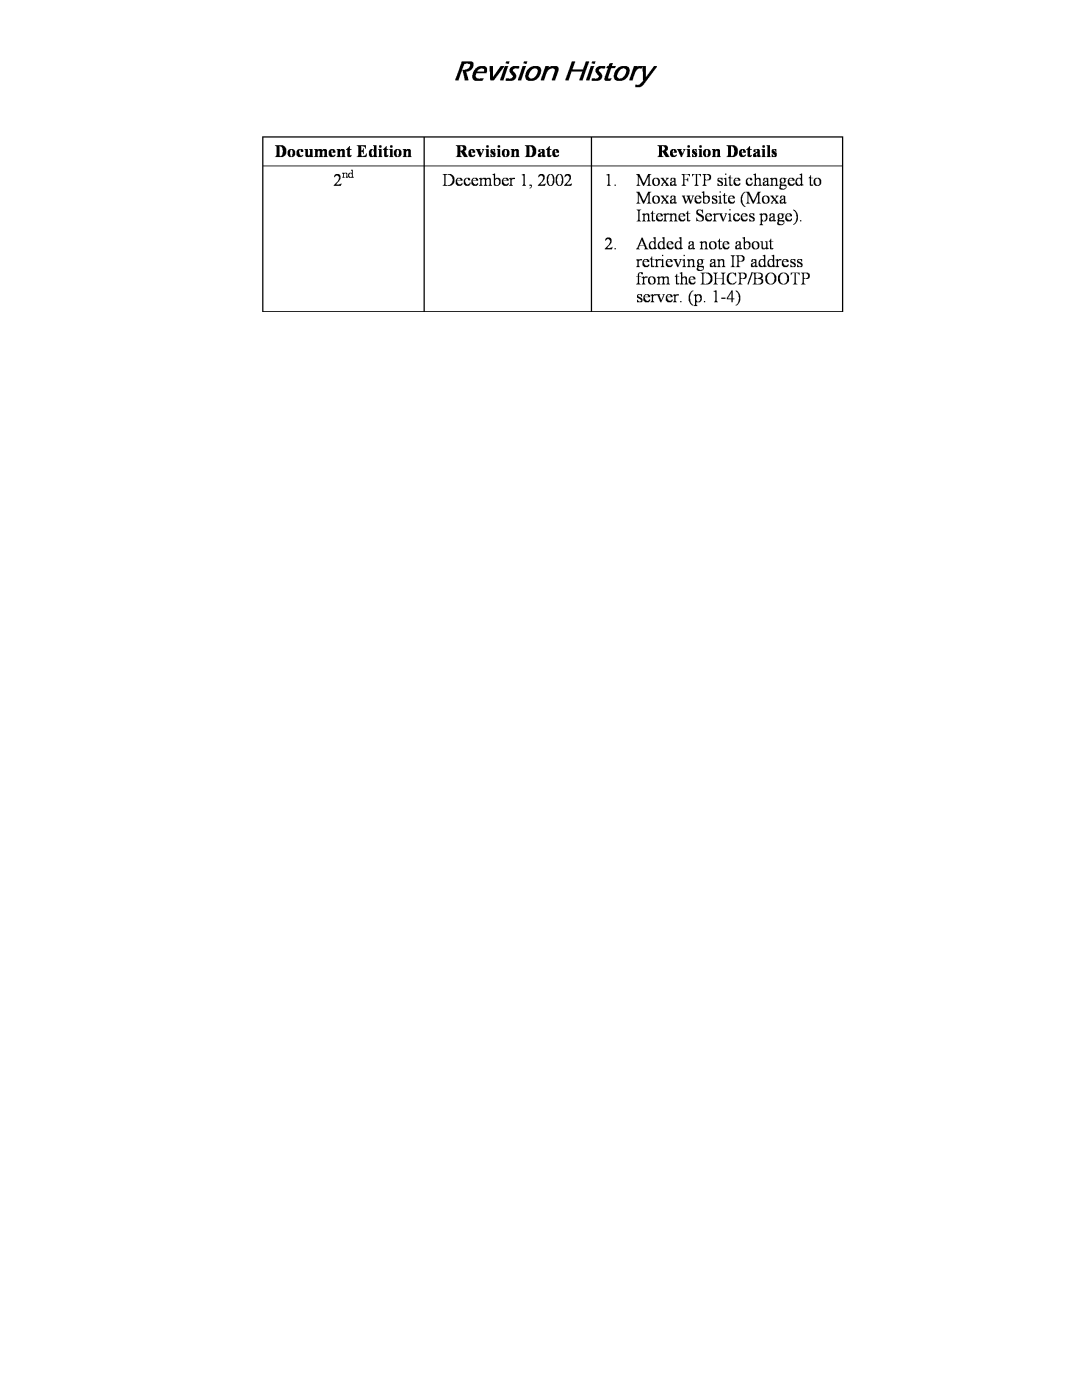 Hamilton Beach DE-301/331, DE-302/304/332/334 manual Revision History, Document Edition, Revision Date, Revision Details 